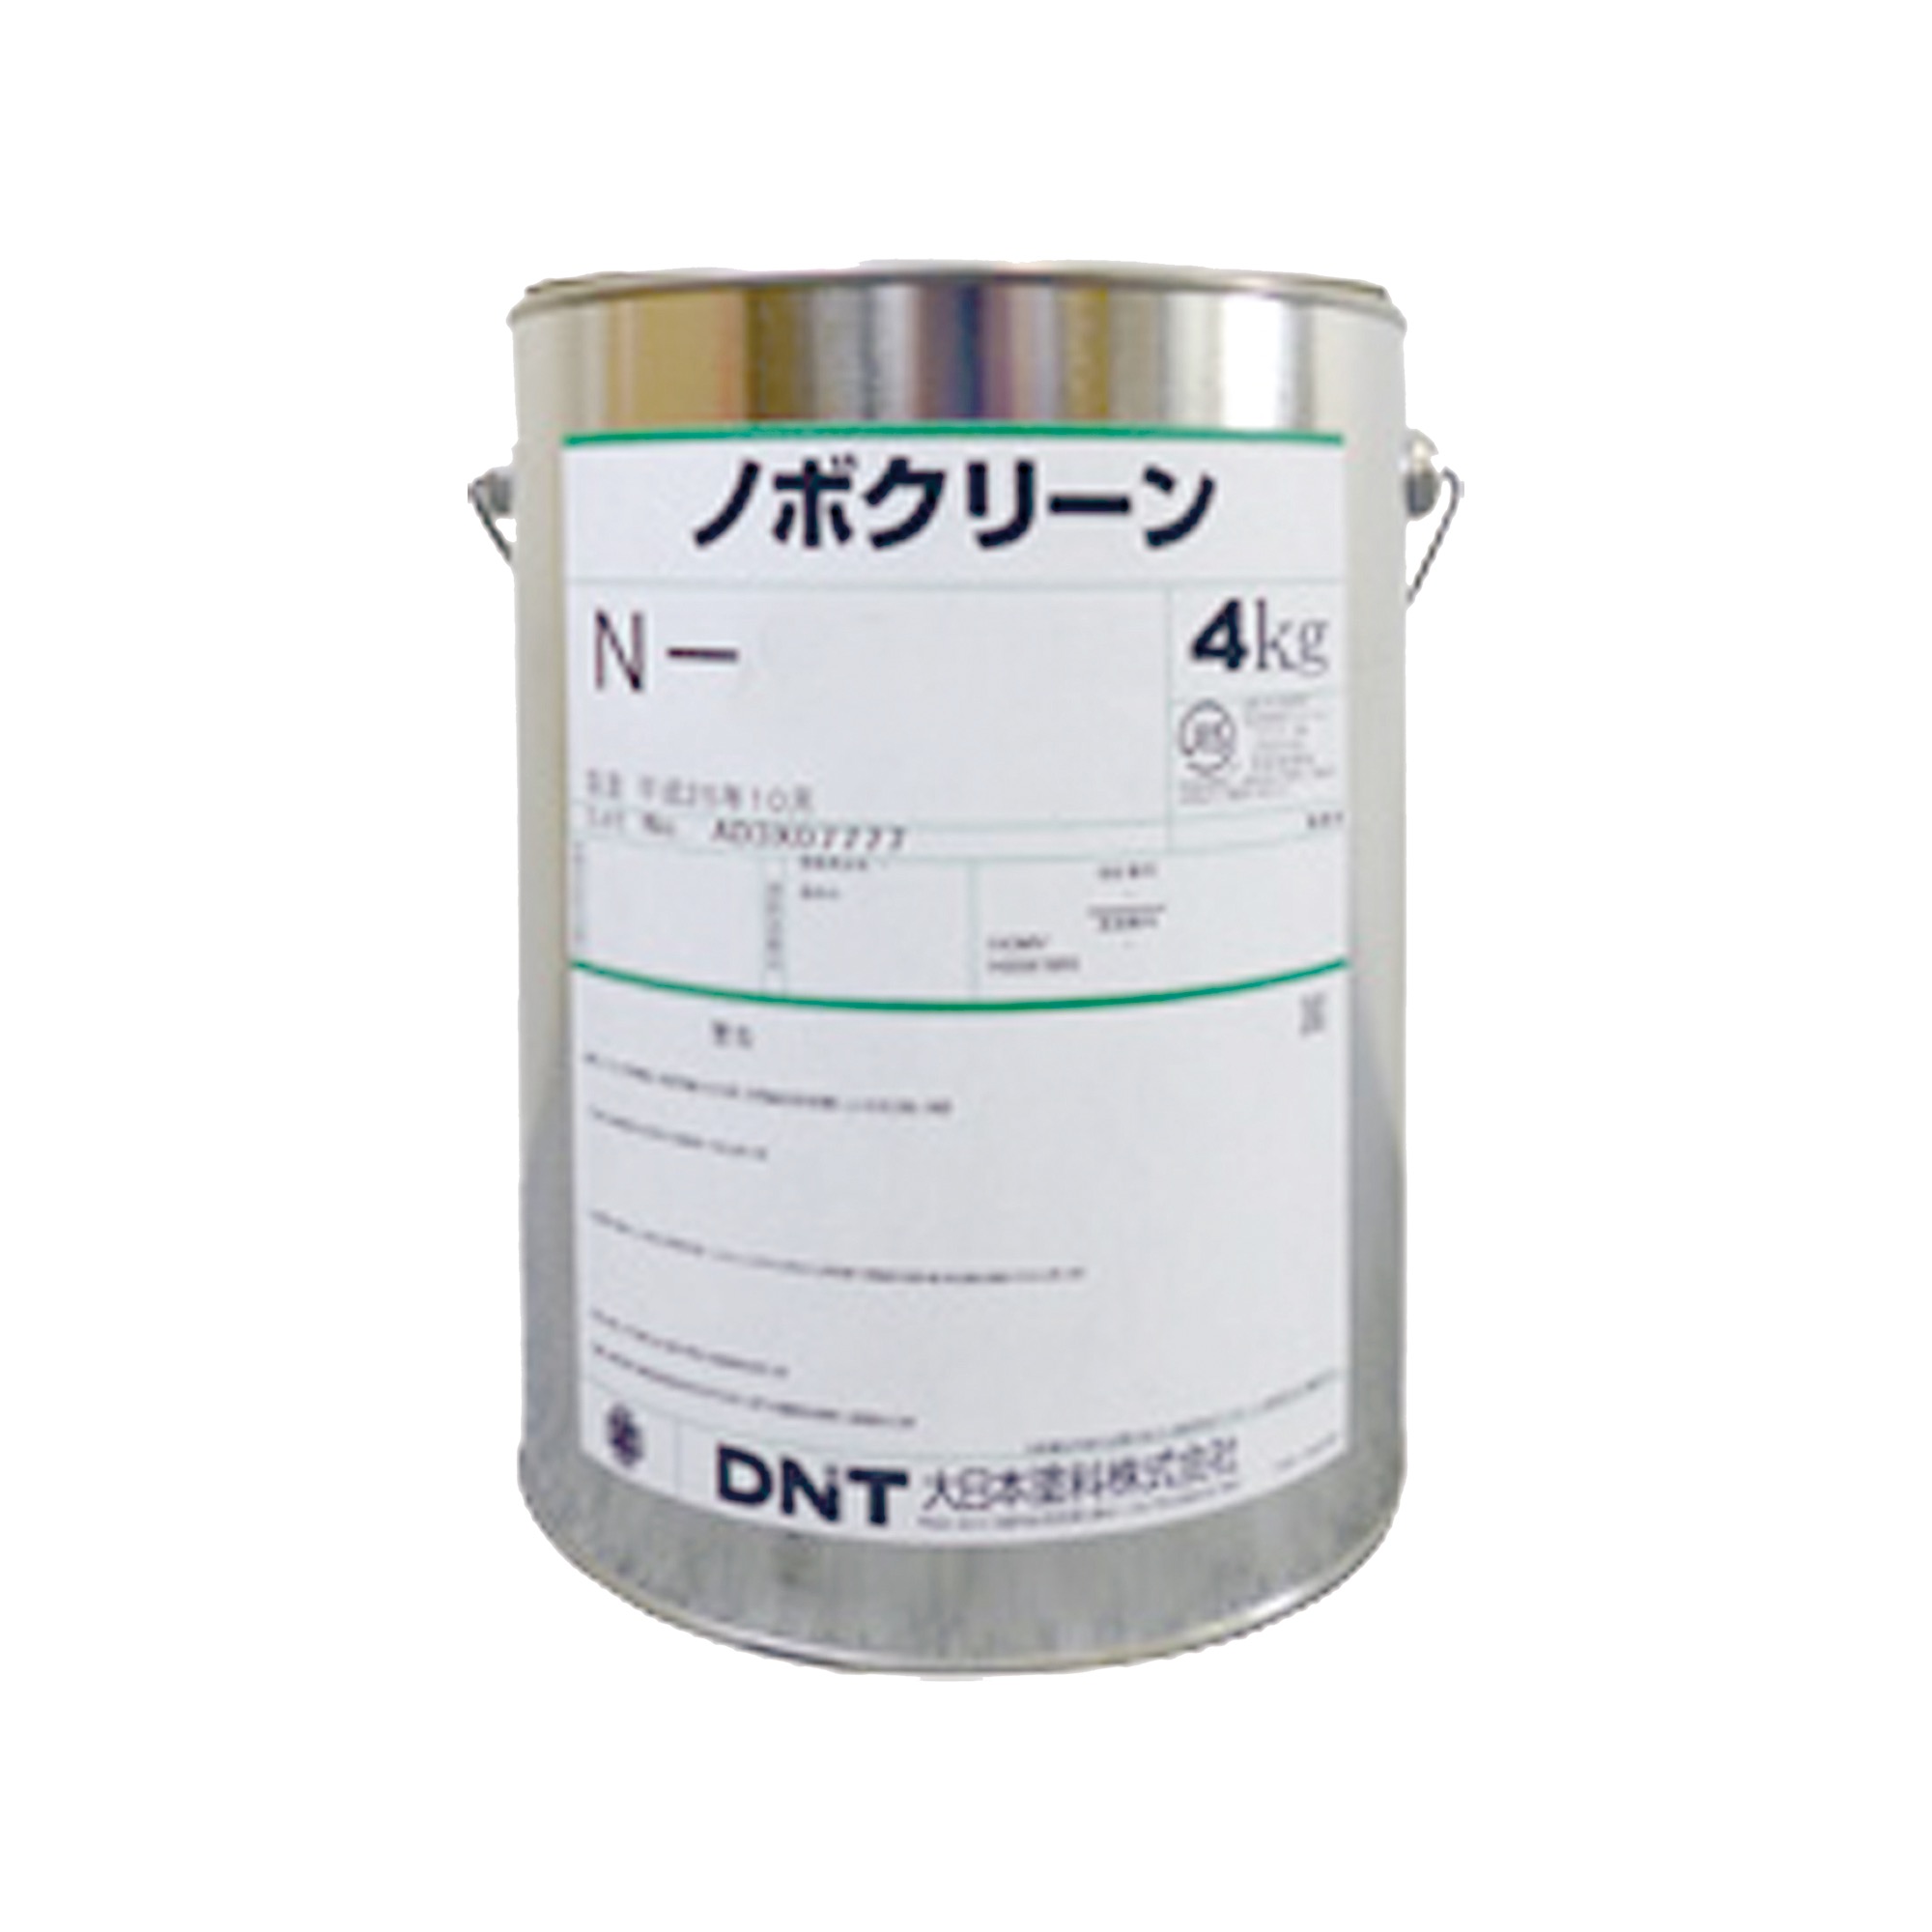 業務用白塗料 4kg缶 PT-IP006-02-G021 業務用白塗装4kg缶